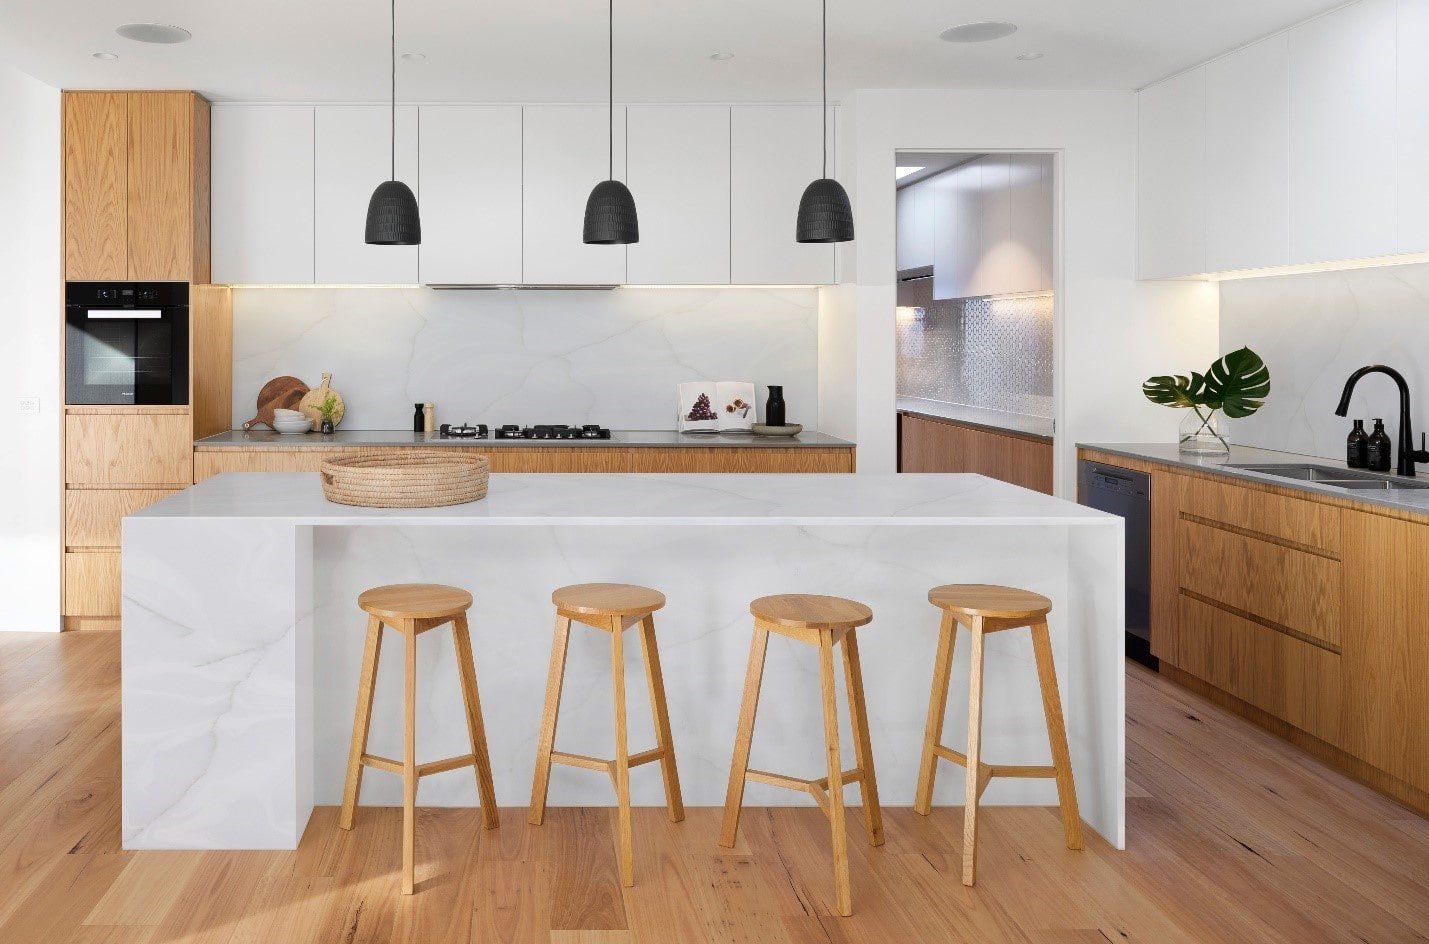 Modern kitchen designs